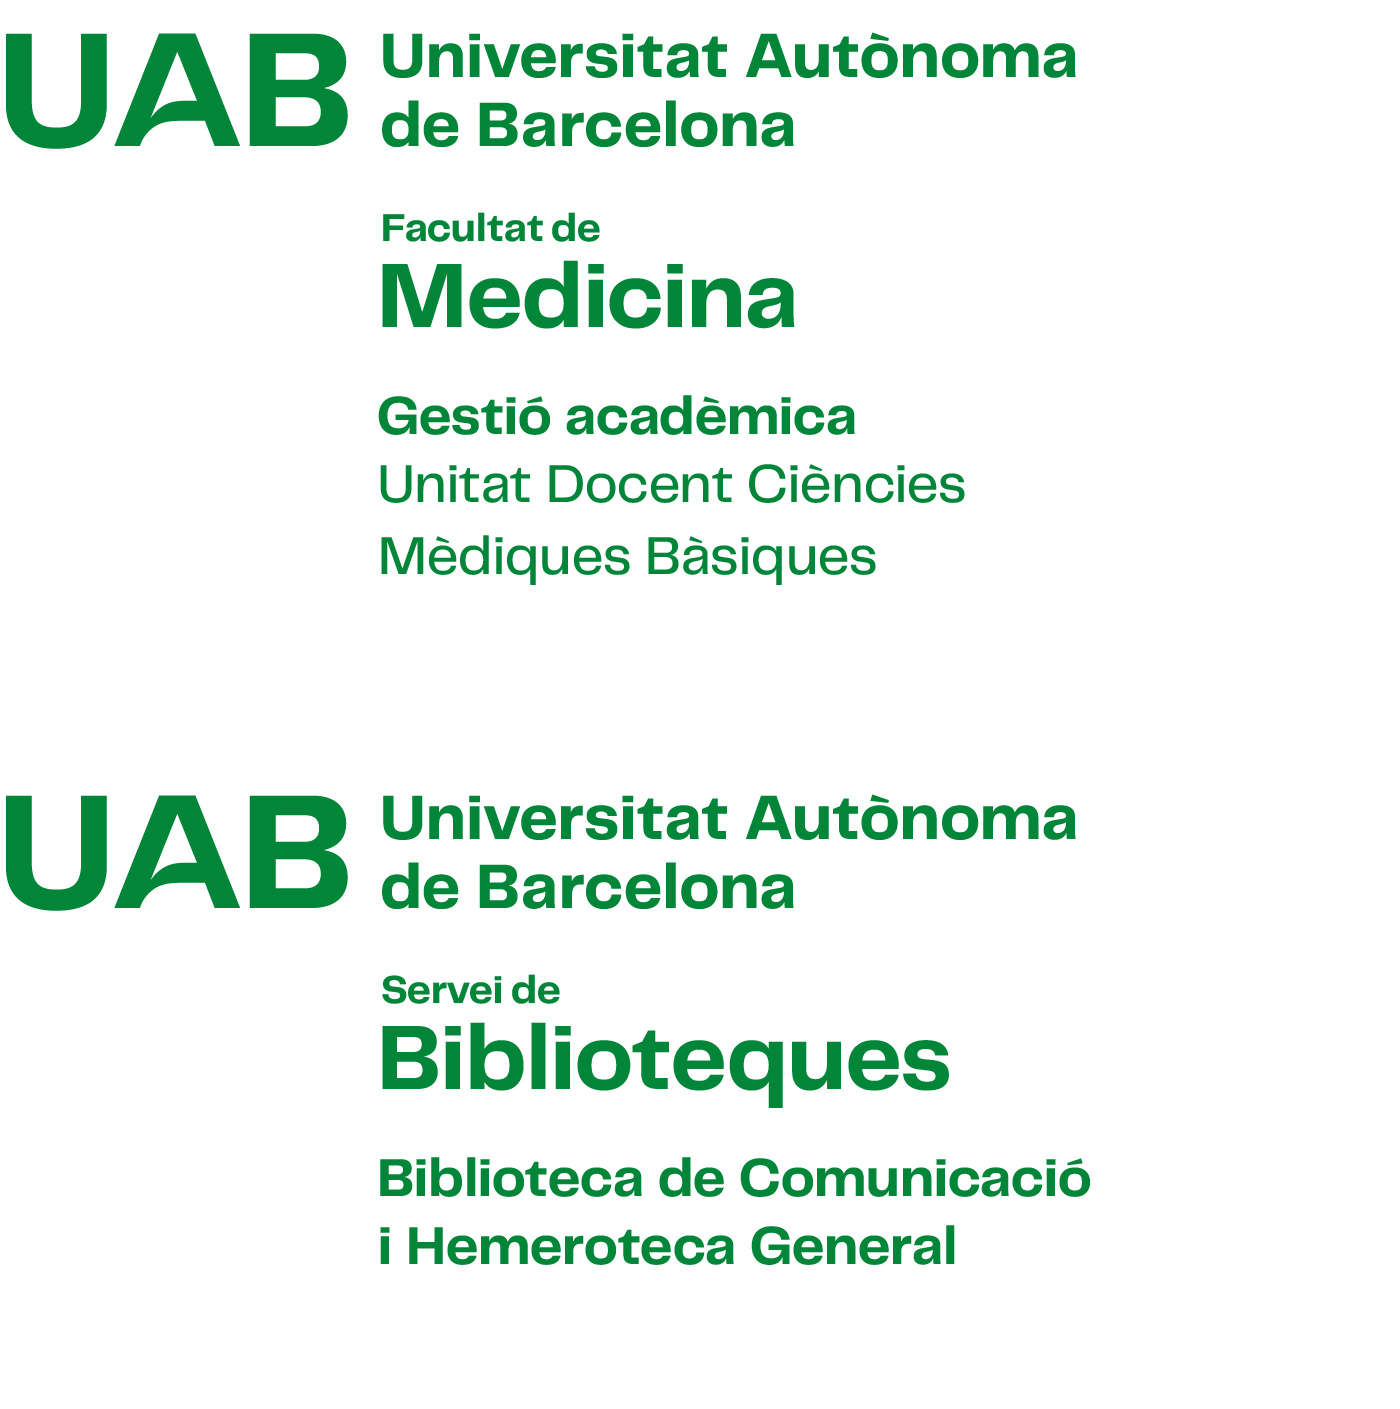 Exemple de construcció de la composició vertical amb versió 3 del logotip UAB